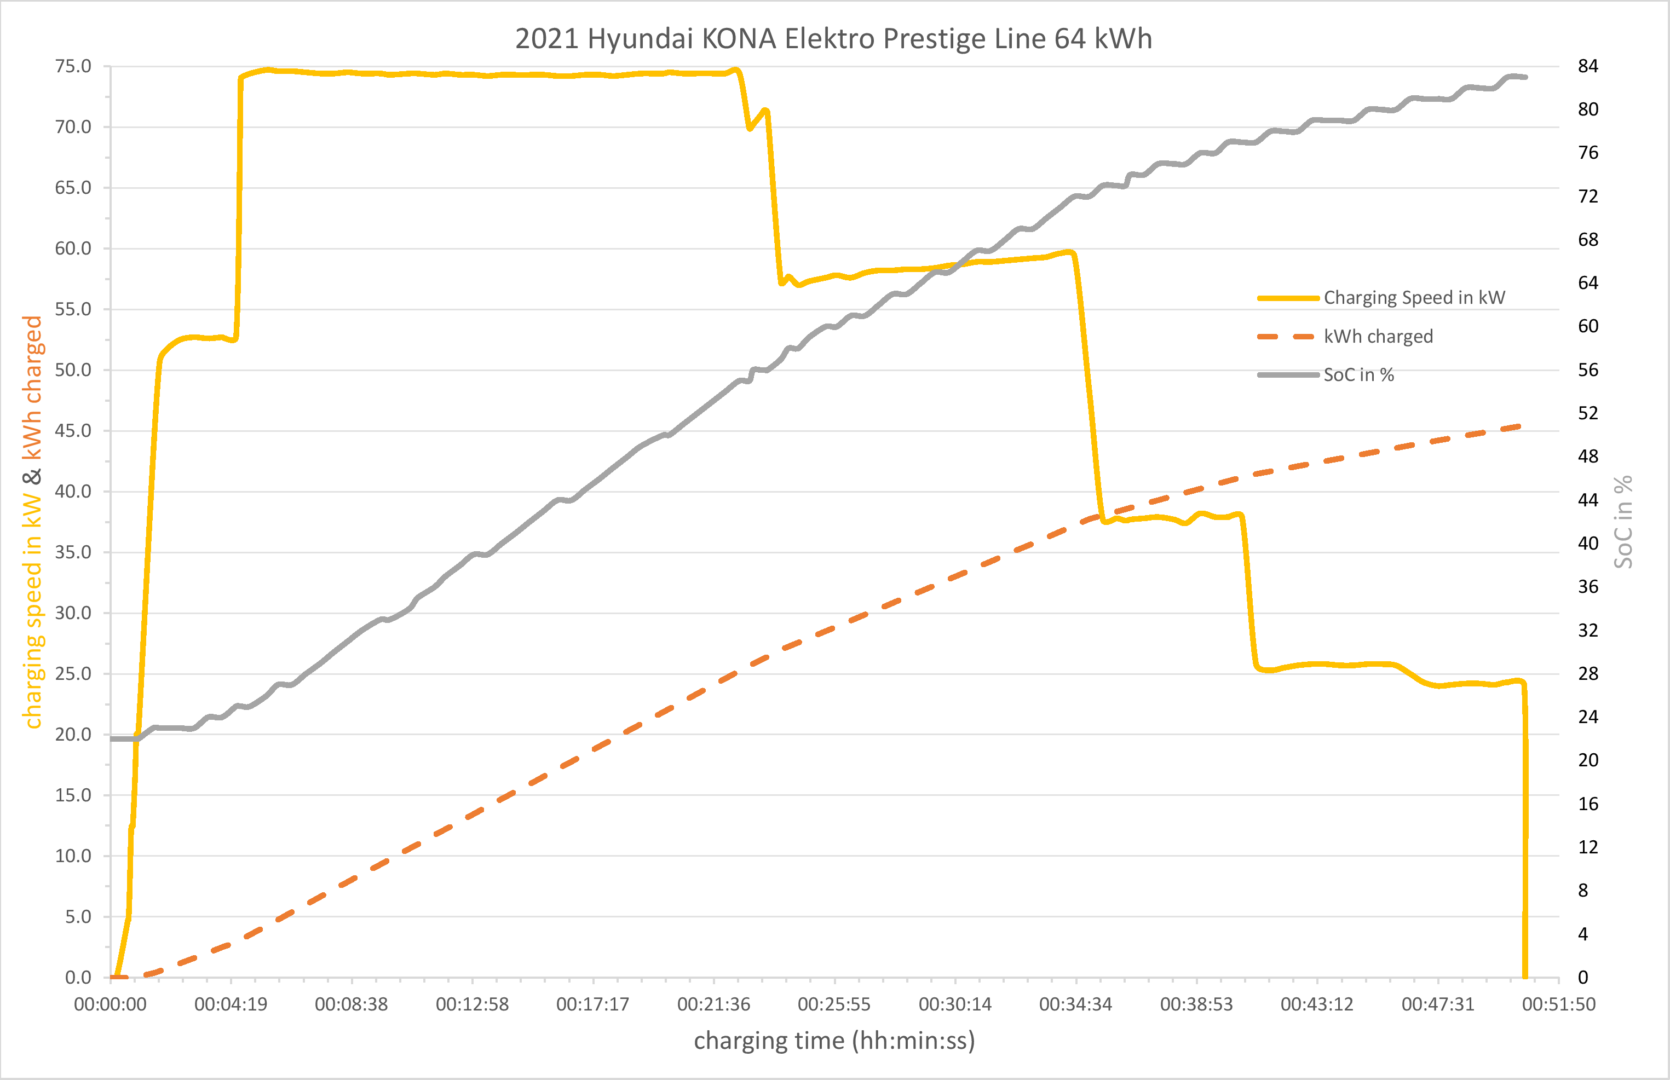 Ladegeschwindigkeit und nachgeladene Kilowattstunden des 2021 Hyundai KONA Elektro Prestige Line 64 kWh.